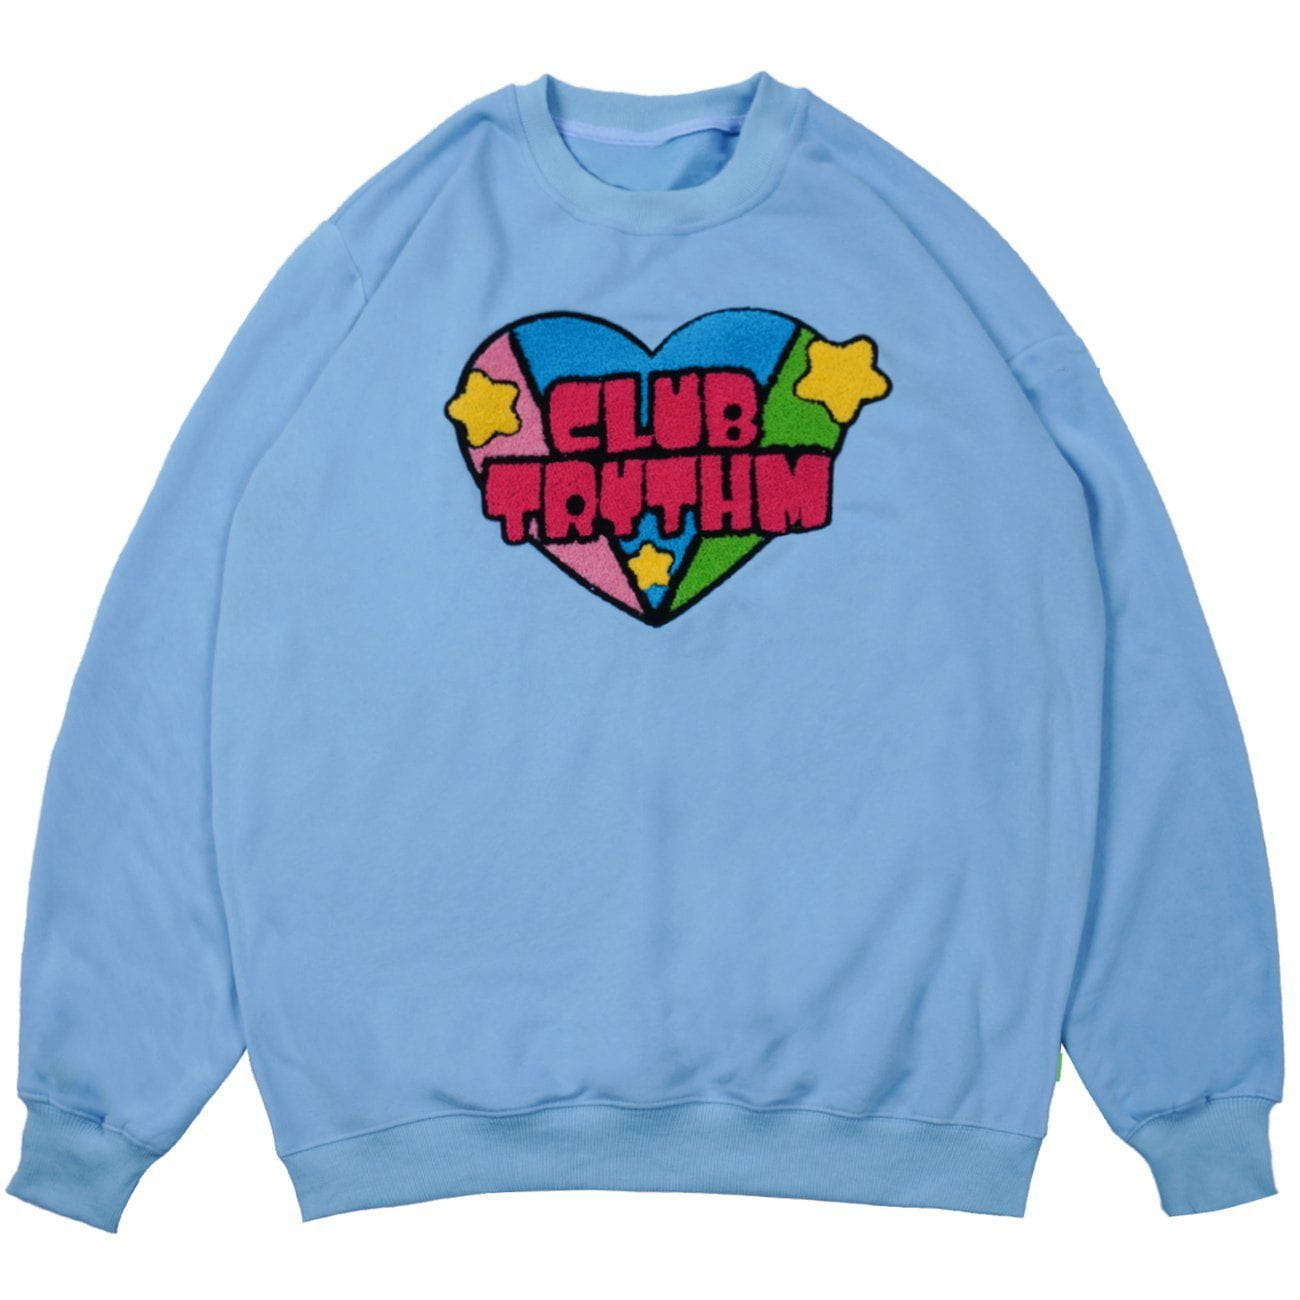 Eprezzy® - Embroidery Heart Sweatshirt Streetwear Fashion - eprezzy.com